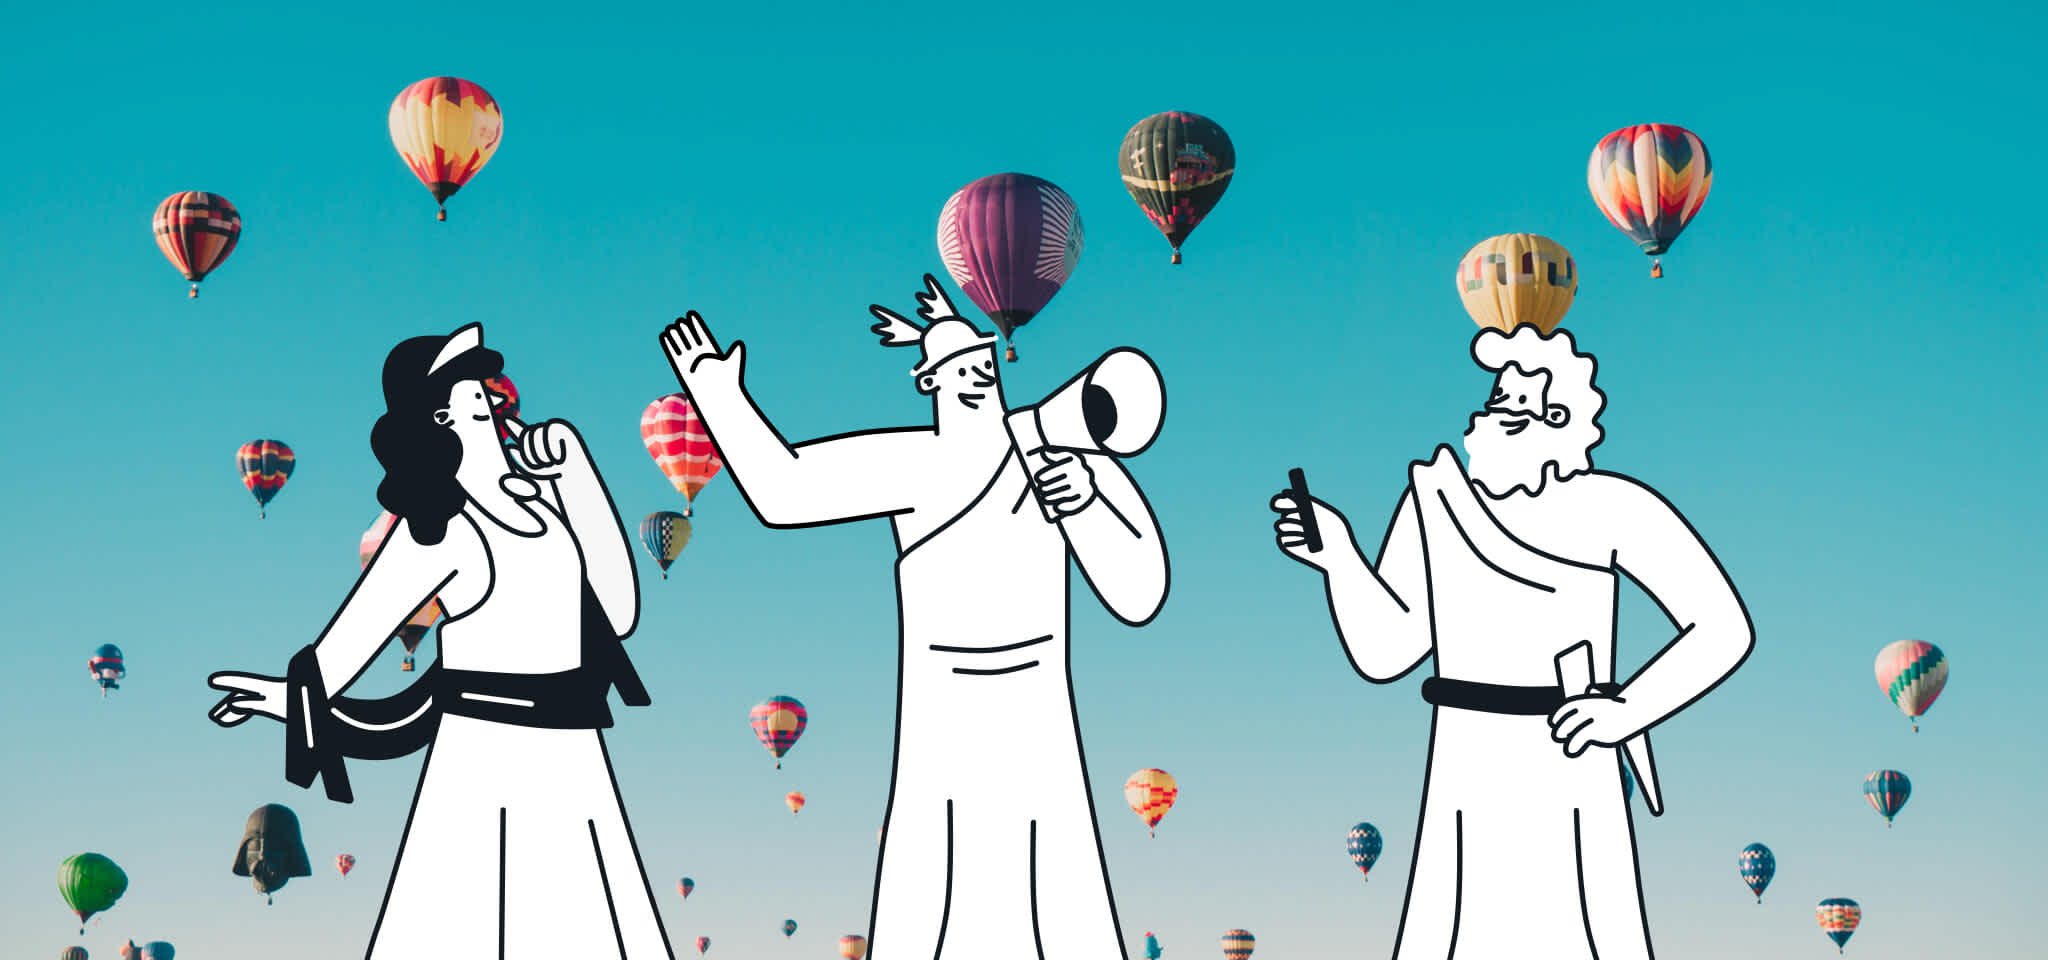 Tres dioses hacen un anuncio frente a unos globos aerostáticos